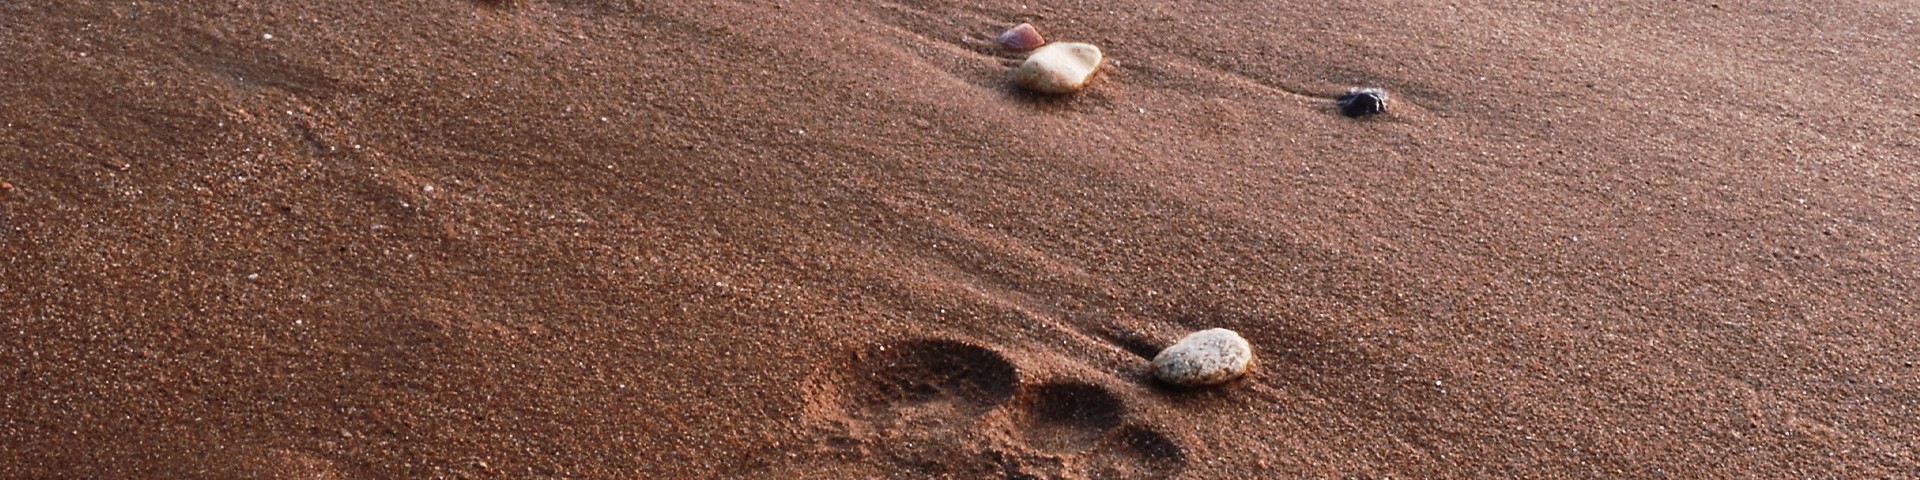 Na piasku czy na skale?